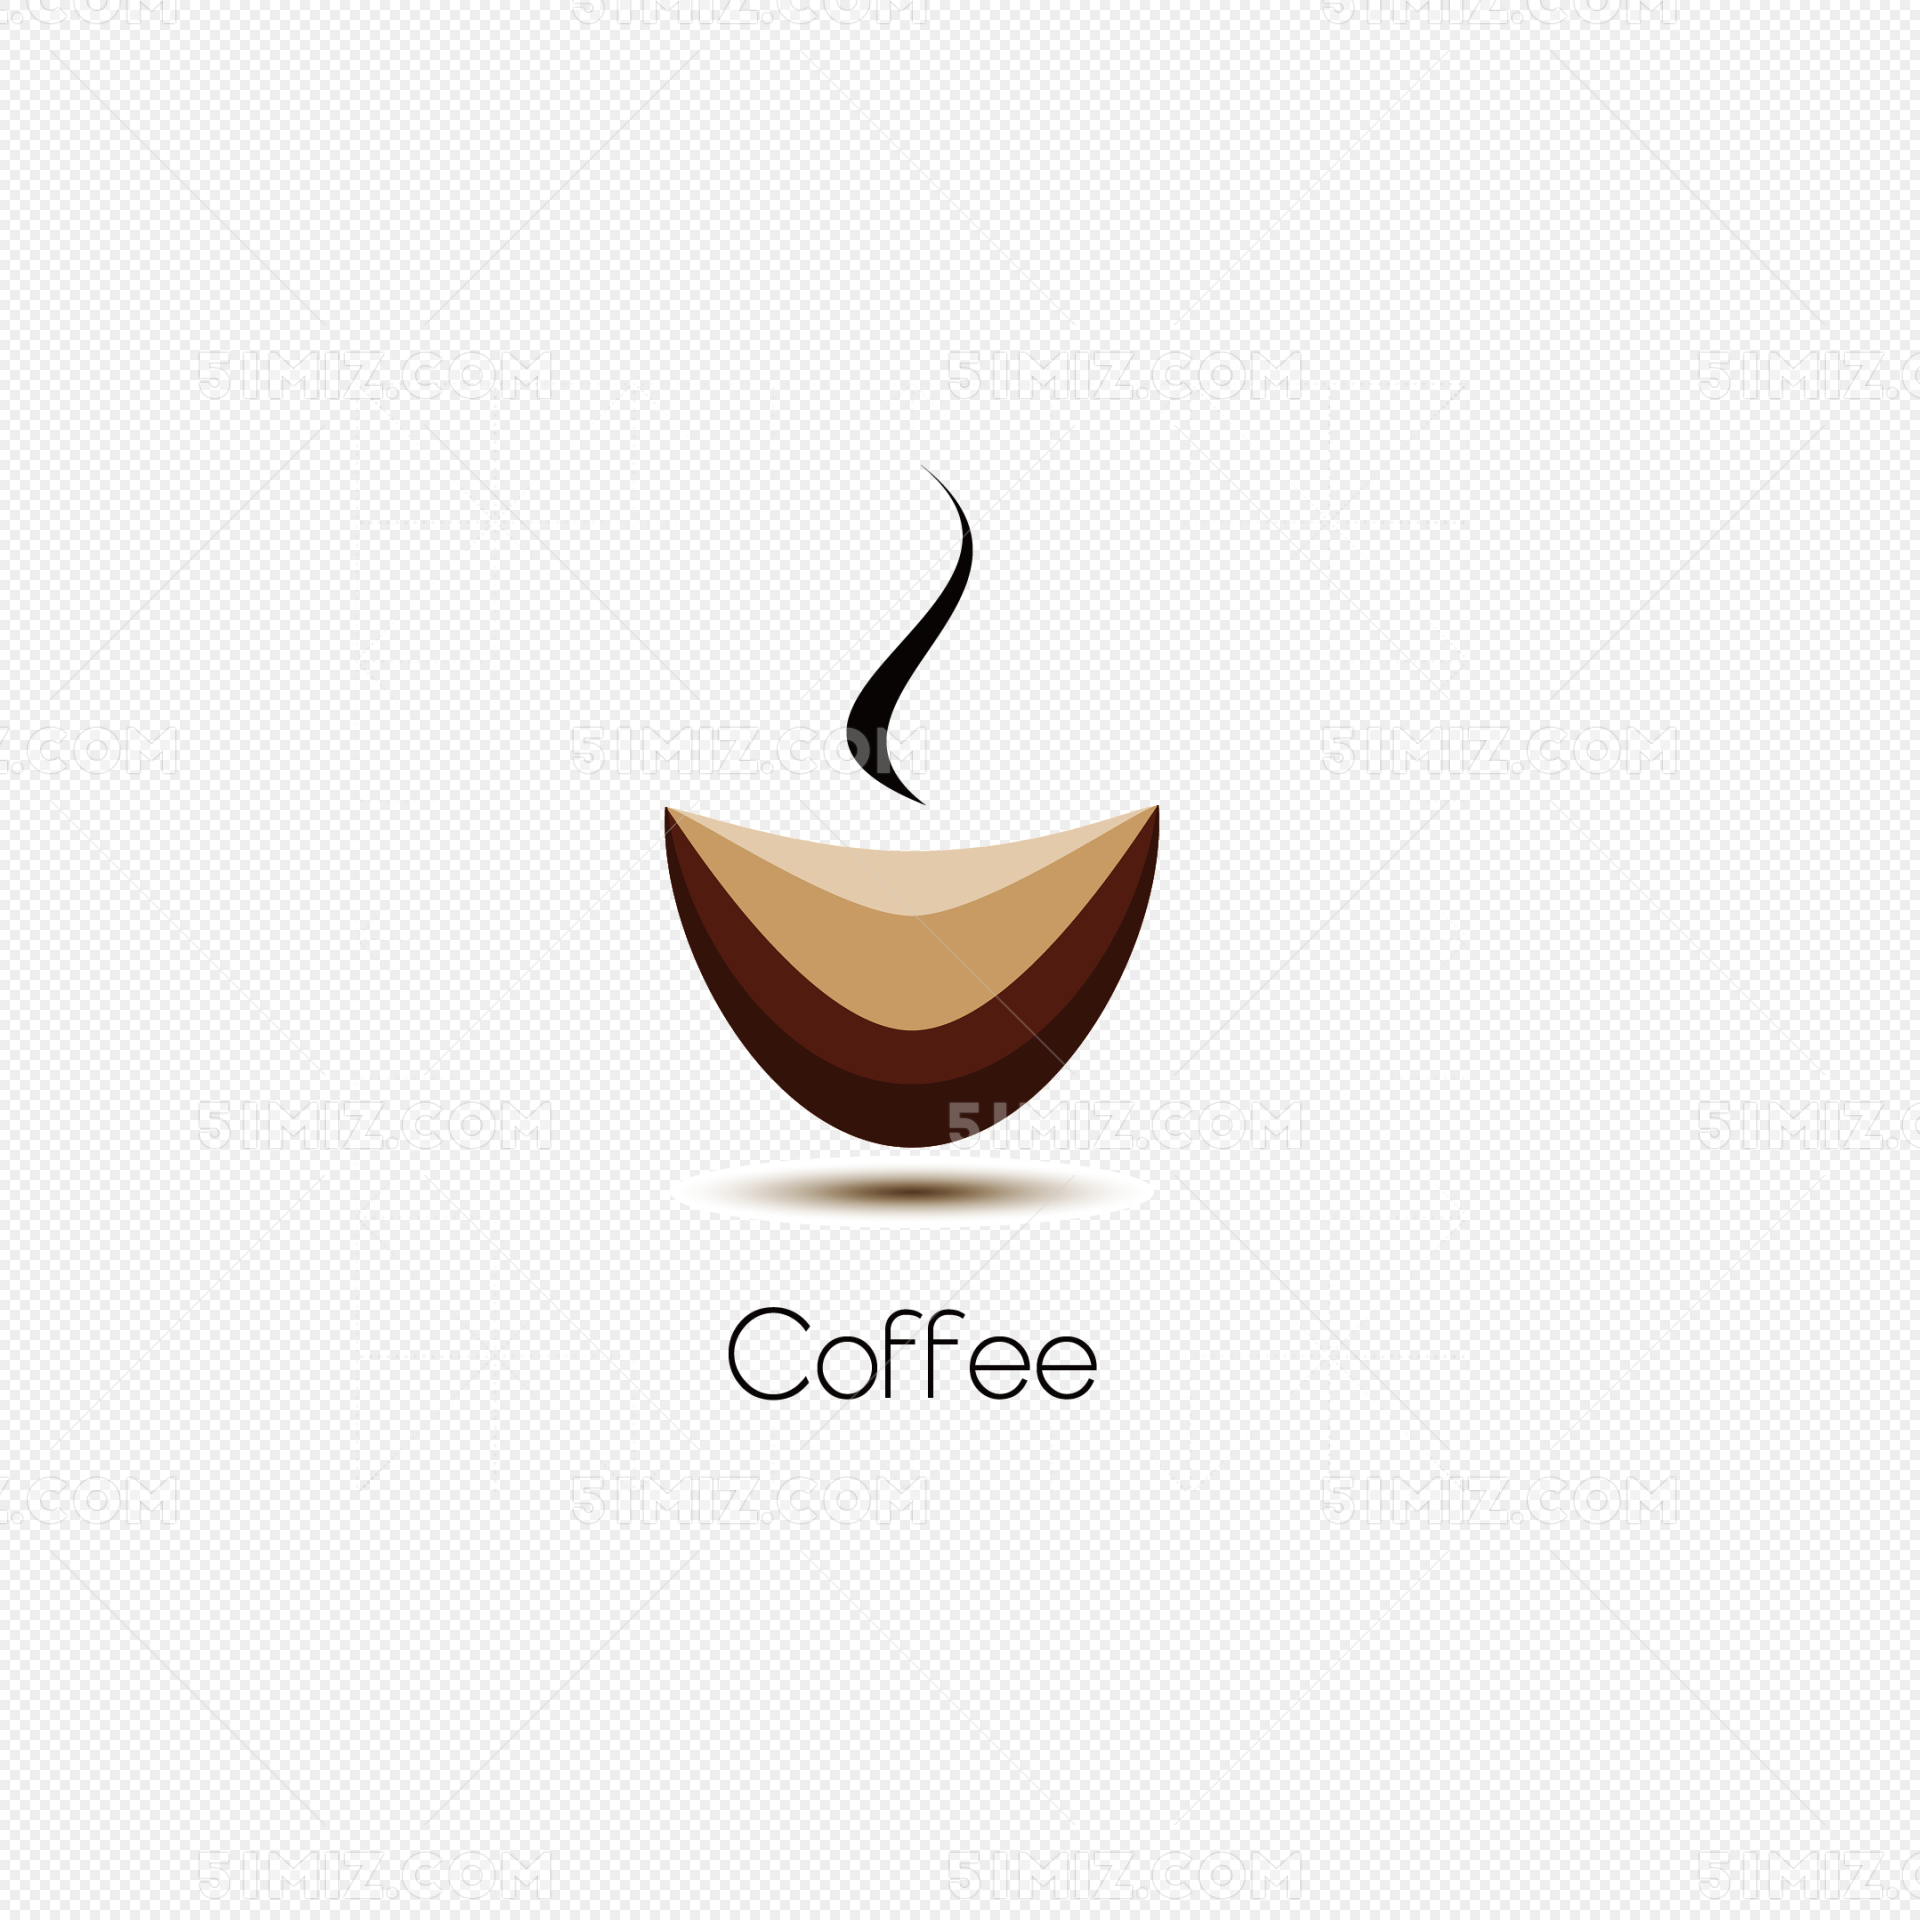 咖啡logo展示样机图片素材免费下载 - 觅知网